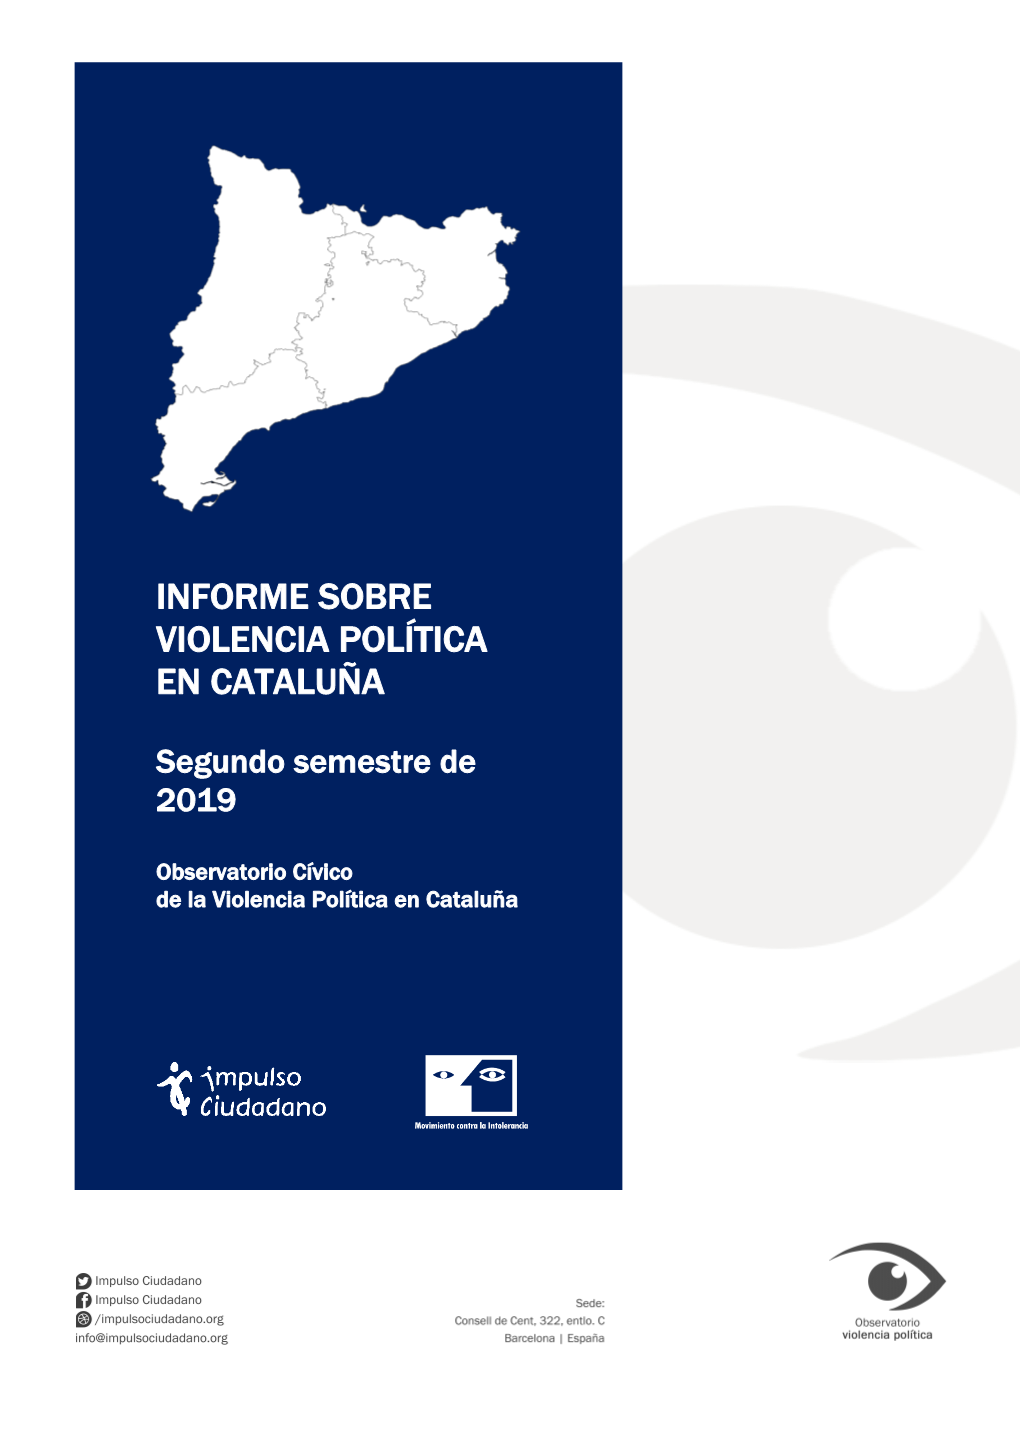 “Informe Sobre Violencia Política En Cataluña” (Segundo Semestre De 2019)